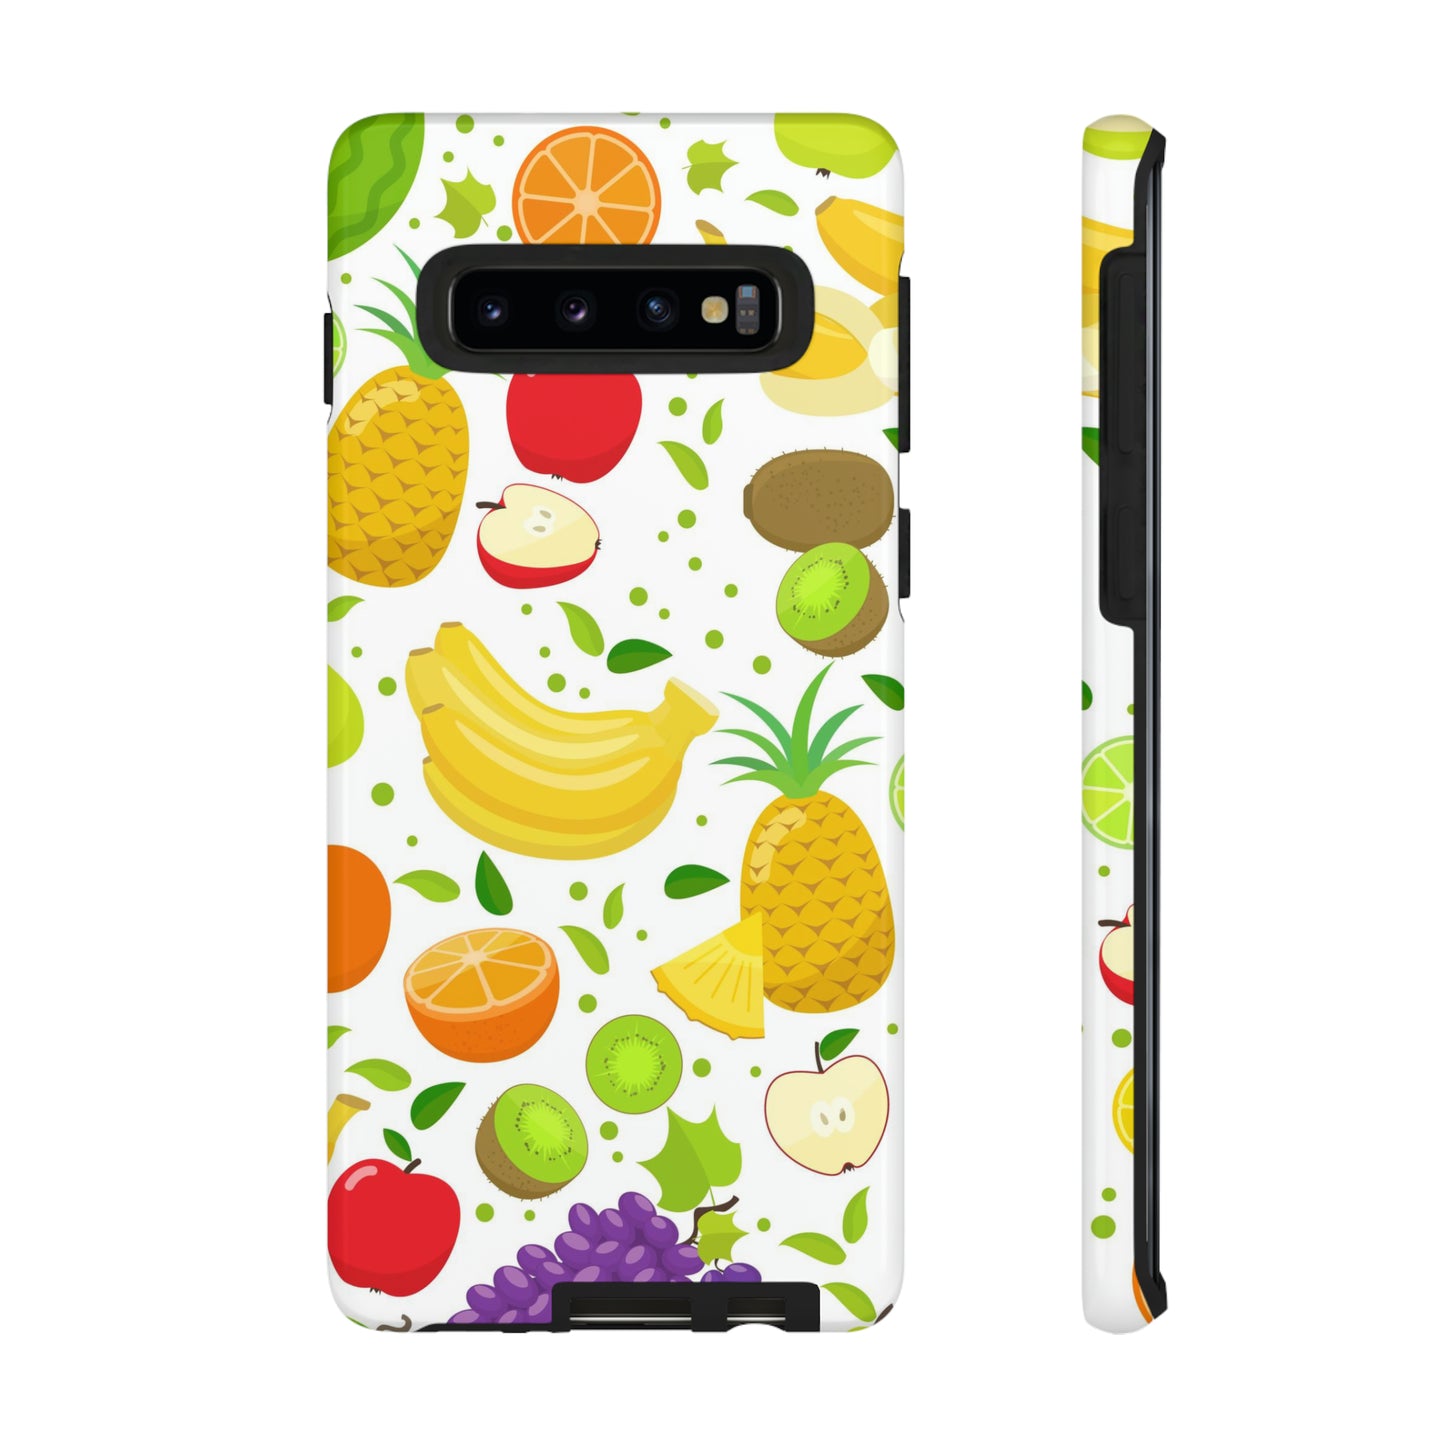 Juicy Samsung phone case